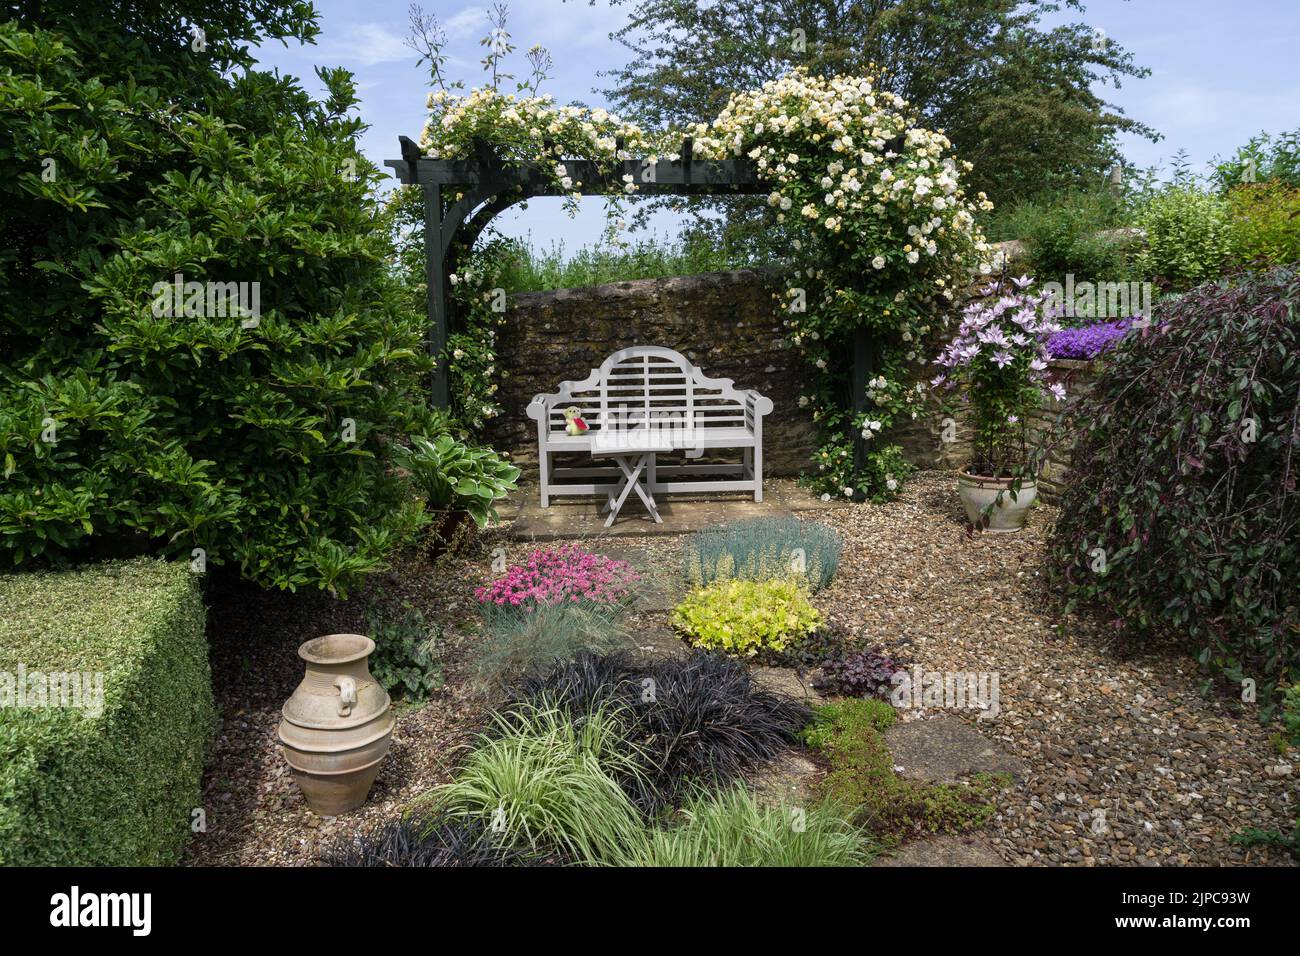 Un jardín inglés en verano, Gayton, Northamptonshire, Reino Unido; arbour, banco blanco y plantas que crecen en grava. Foto de stock